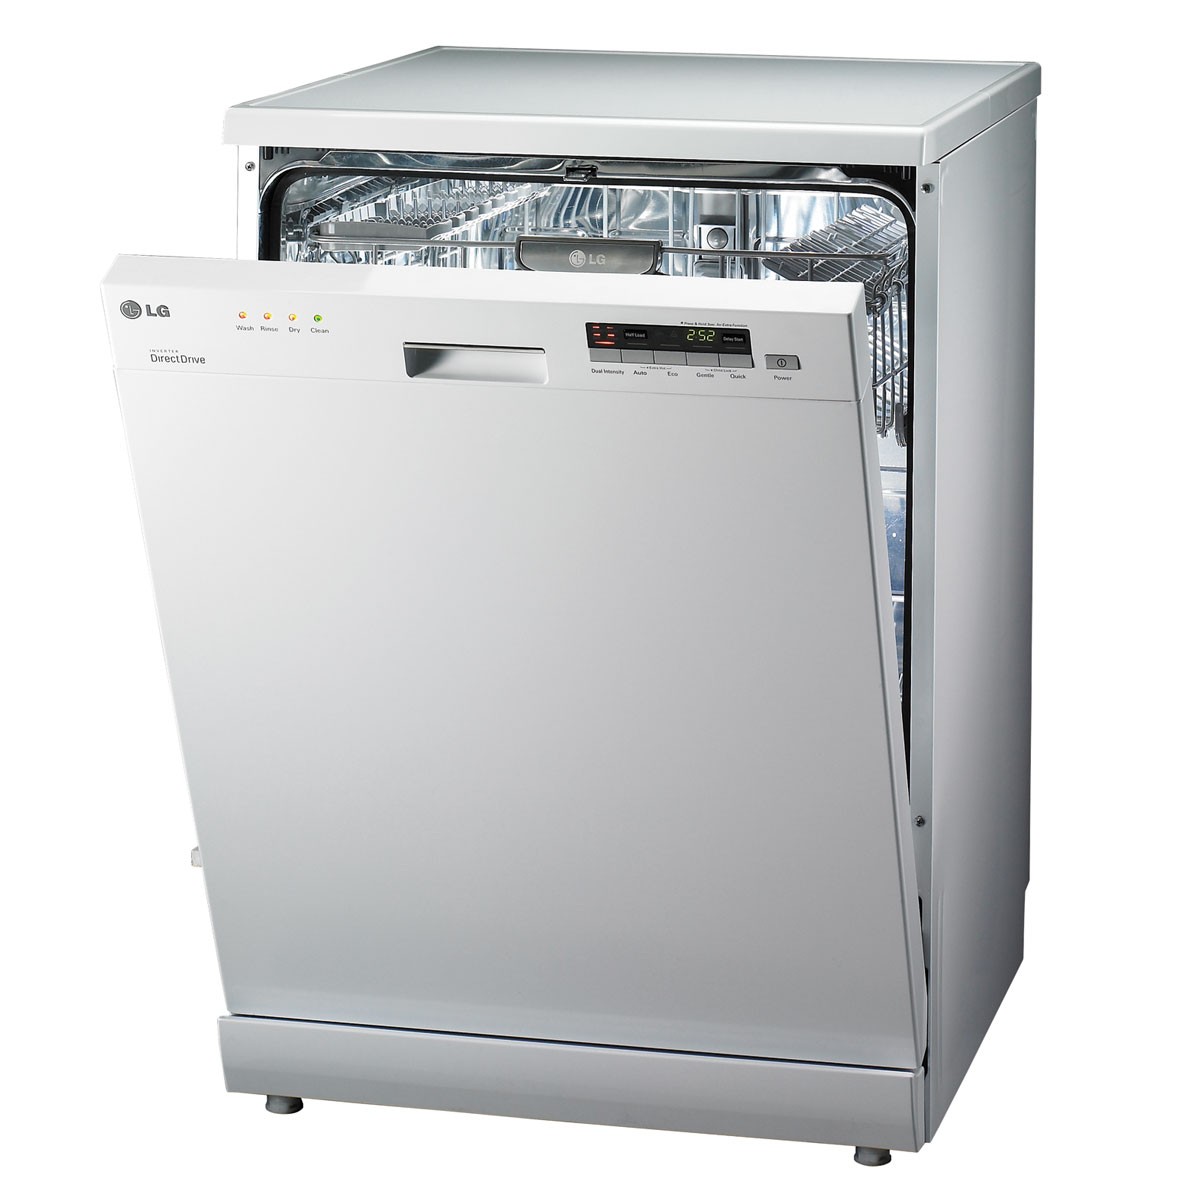 LG Dishwasher Maintenance